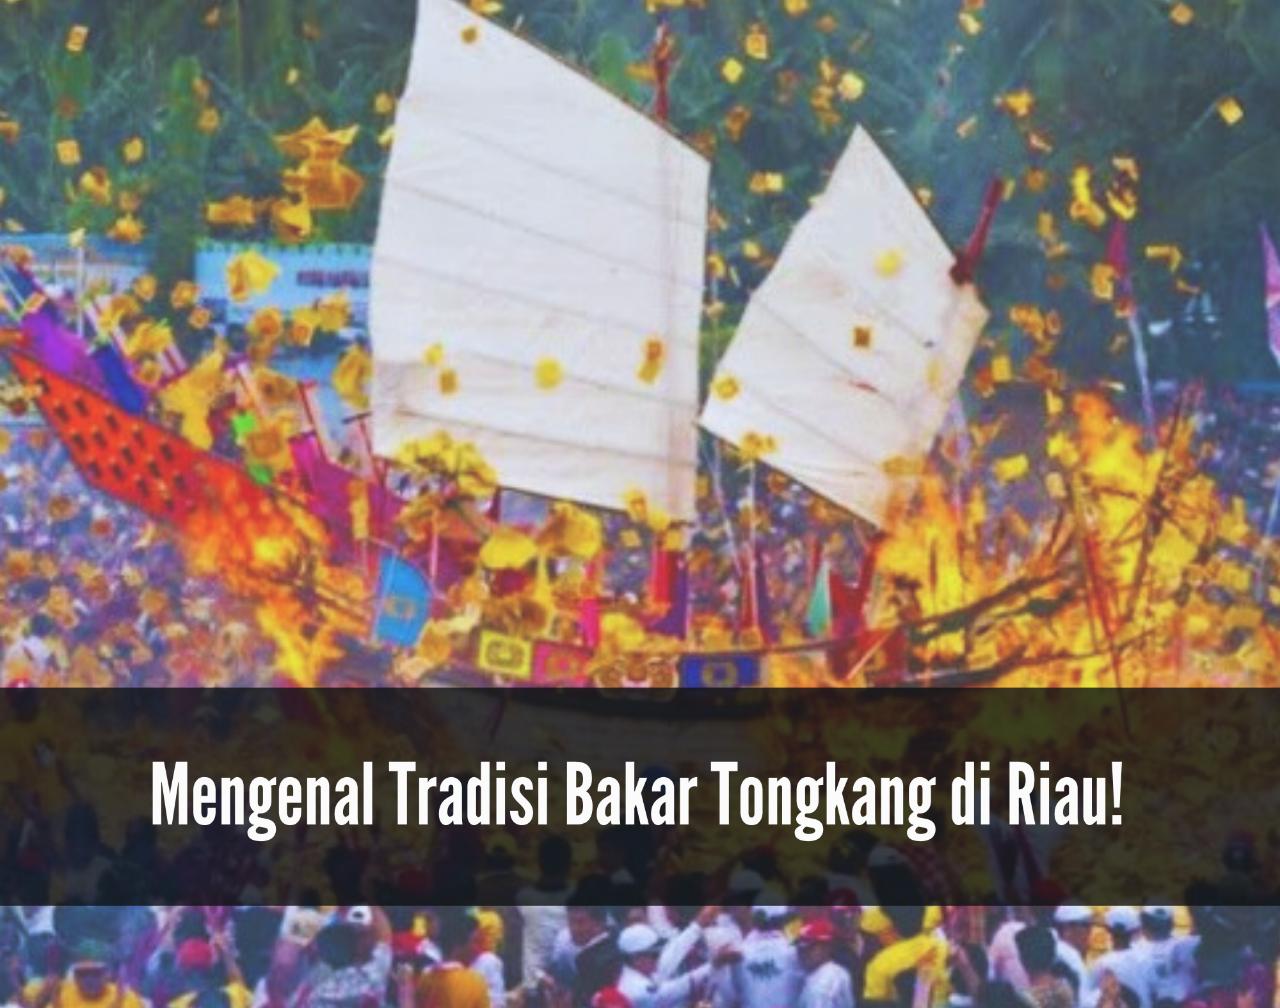 Mengenal Tradisi Bakar Tongkang di Riau, Festival Perayaan Keturunan Tionghoa Menarik Banyak Wisatawan